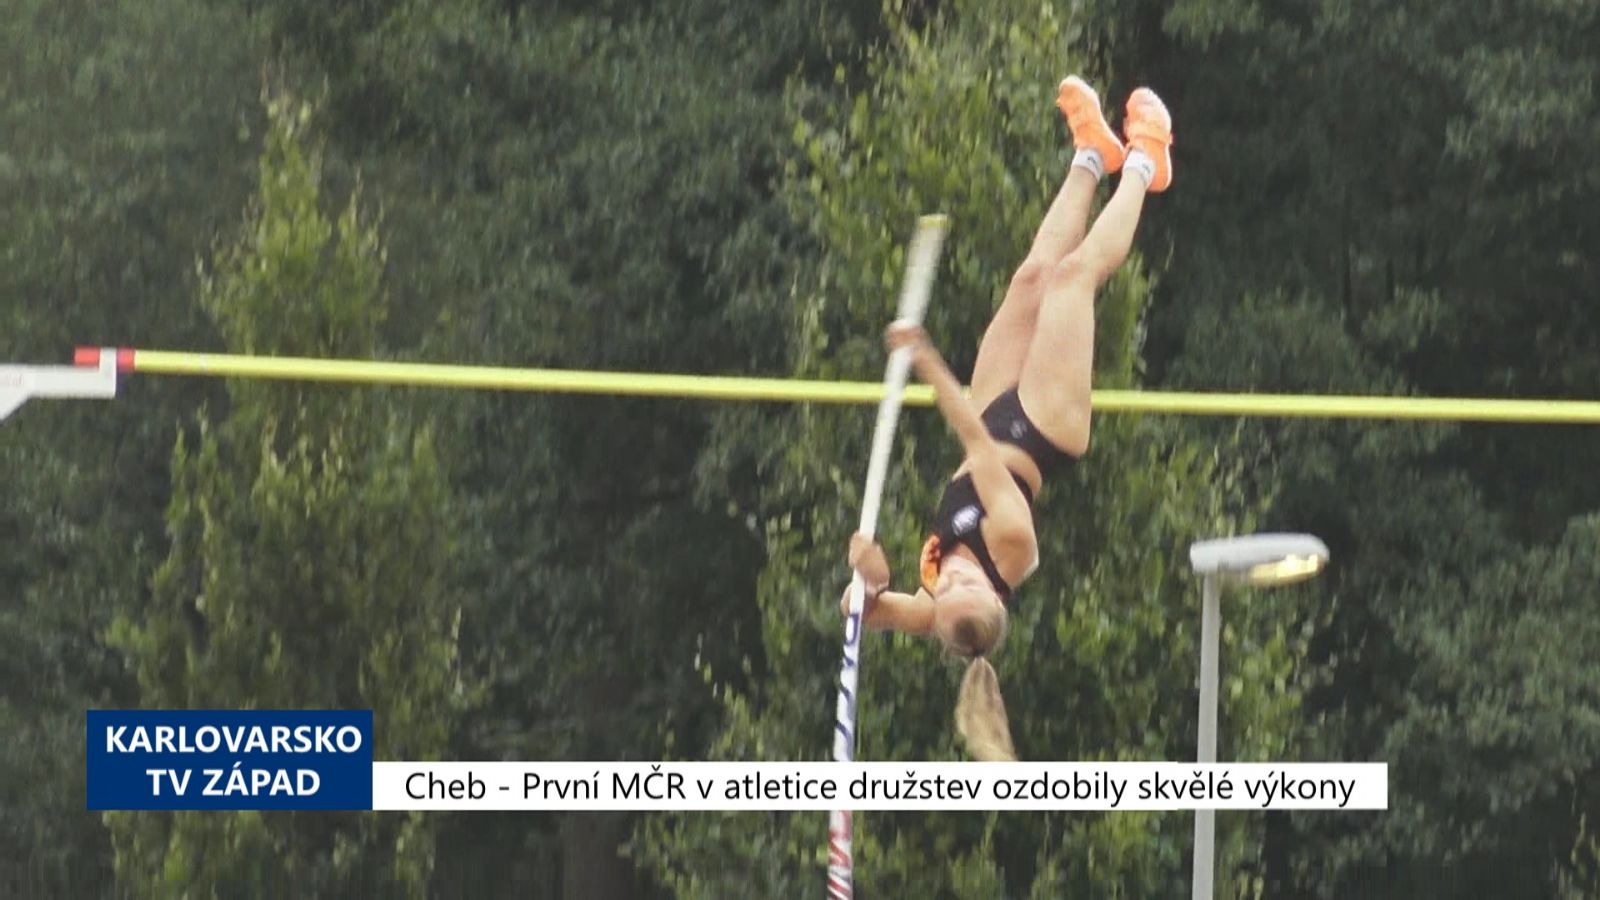 Cheb: První MČR v atletice družstev ozdobily skvělé výkony (TV Západ)